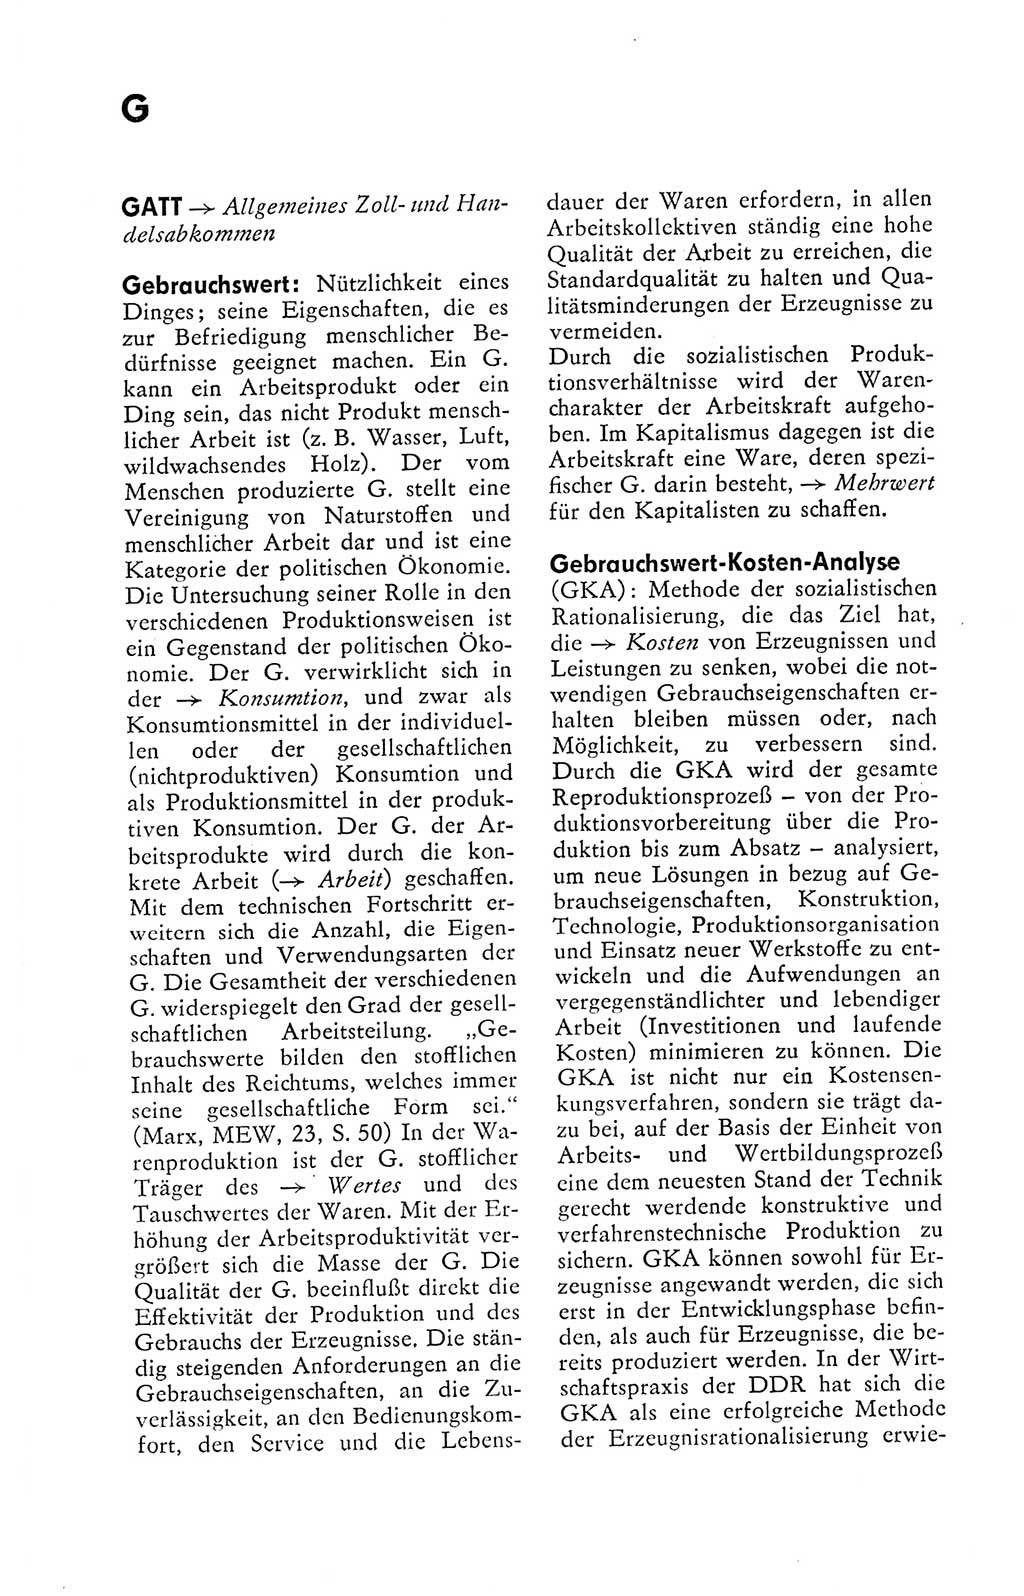 Kleines politisches Wörterbuch [Deutsche Demokratische Republik (DDR)] 1978, Seite 264 (Kl. pol. Wb. DDR 1978, S. 264)